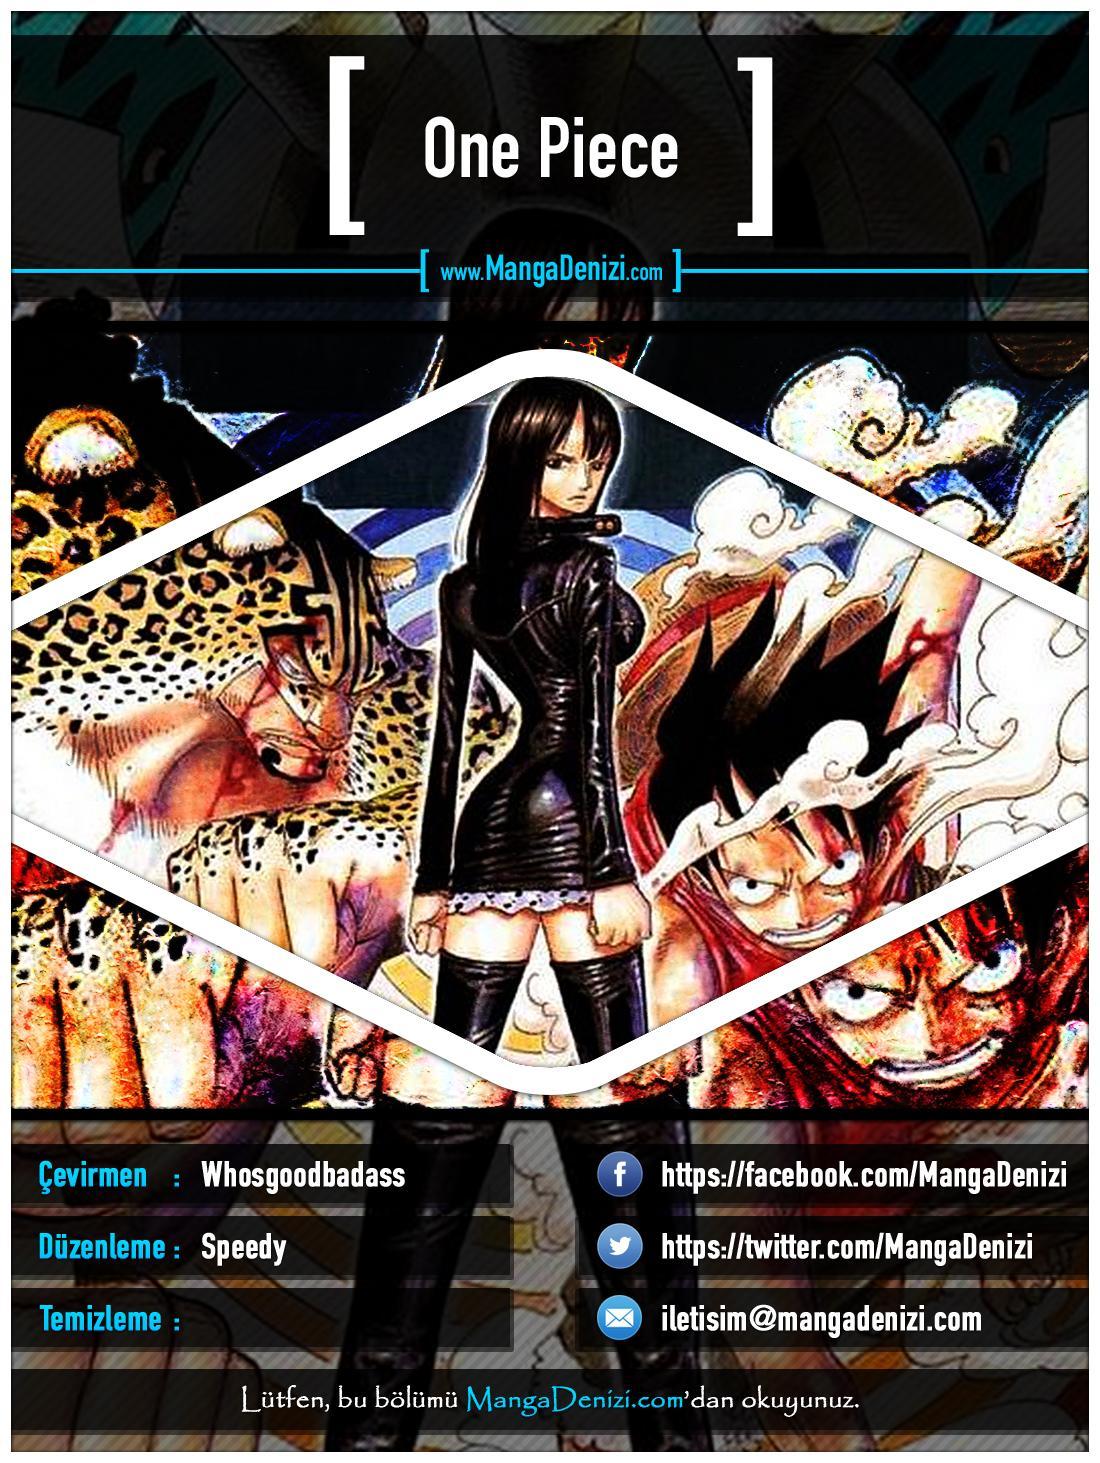 One Piece [Renkli] mangasının 0350 bölümünün 1. sayfasını okuyorsunuz.